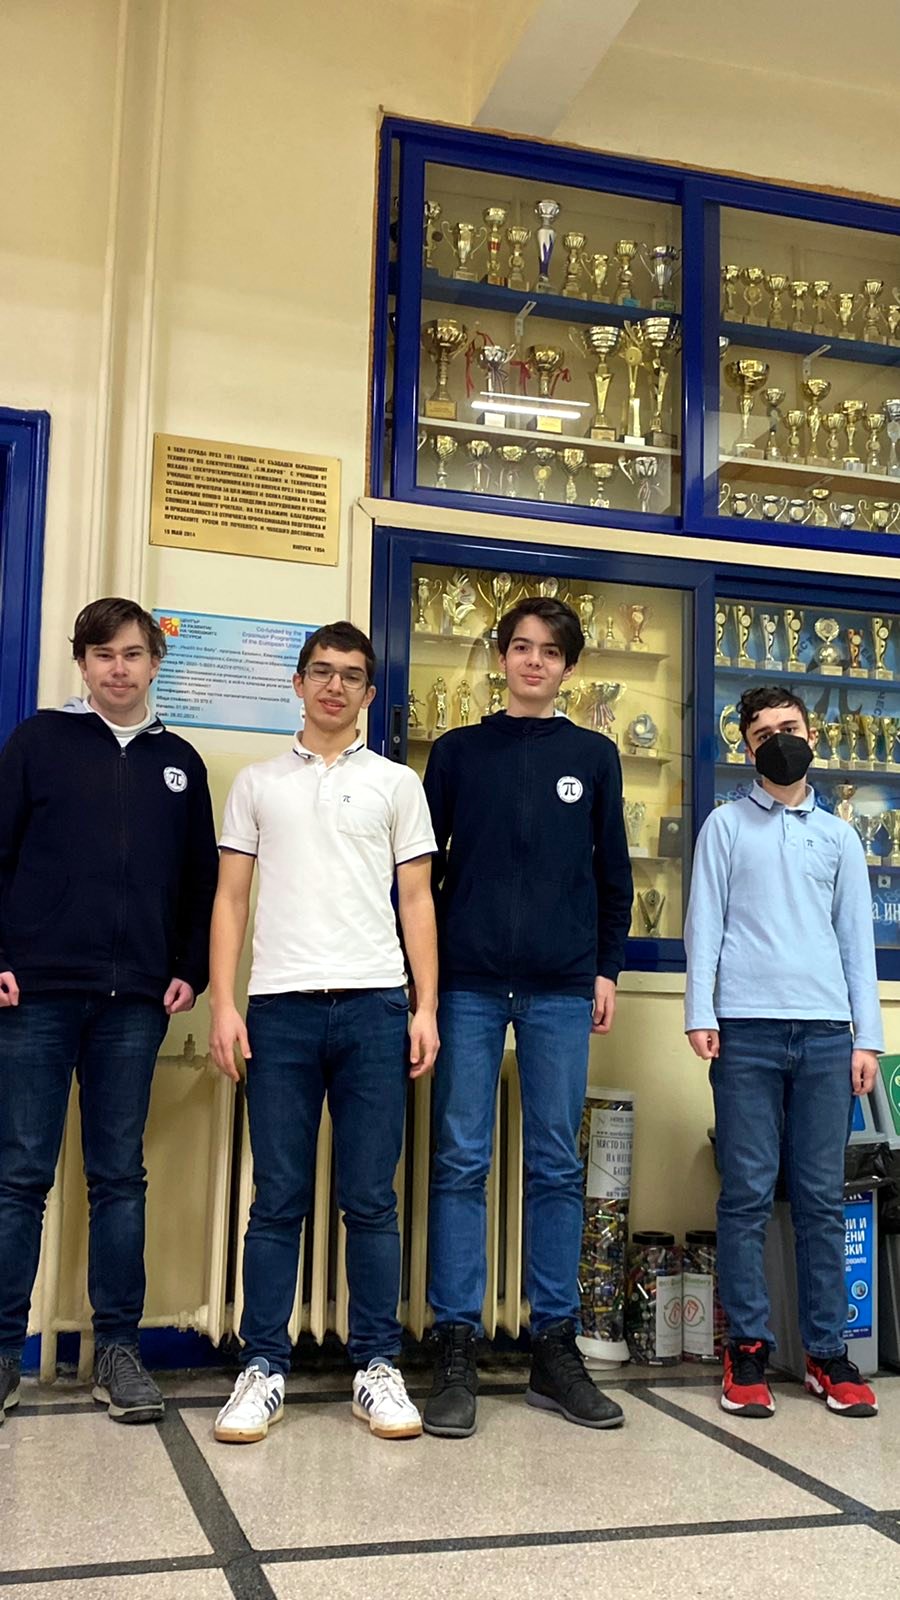 ПЧМГ математици завоюваха два сребърни медала и две почетни отличия на Кавказката олимпиада по математика, провела се виртуално от 11 до 16 март с над 100 участници от 19 страни.